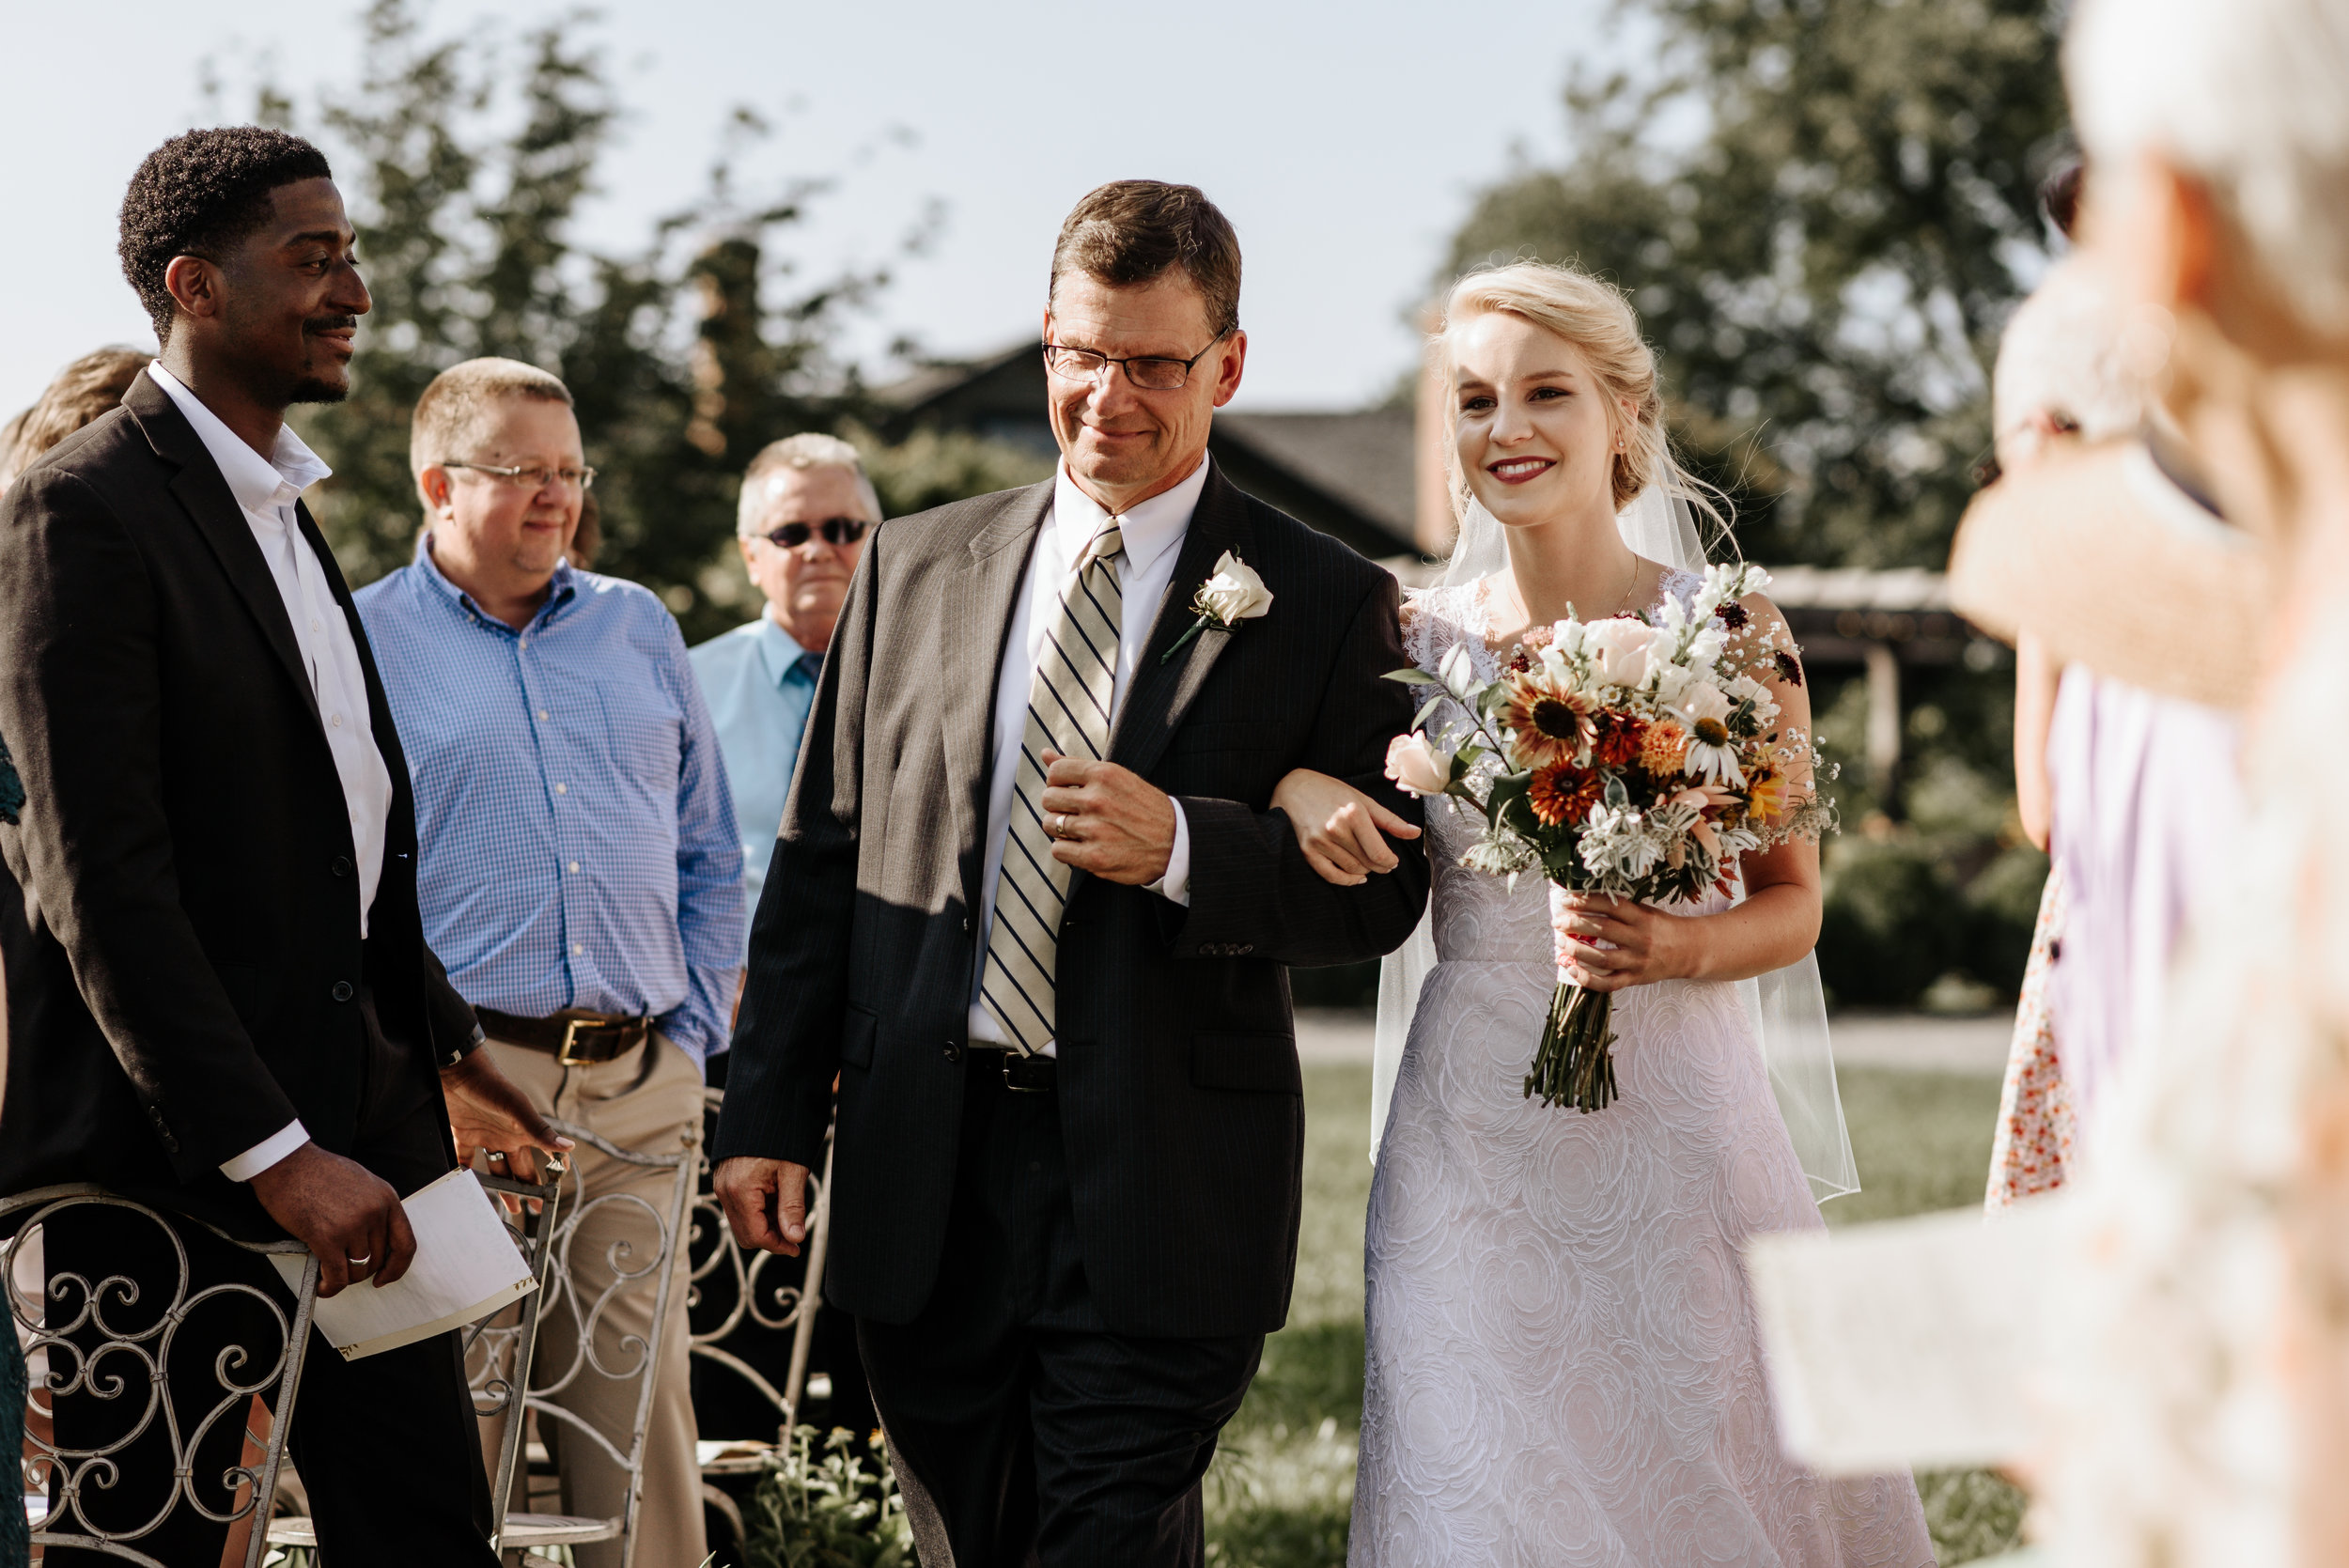 Lauren-Trell-Wedding-Market-at-Grelen-Virginia-Photography-by-V-0077.jpg